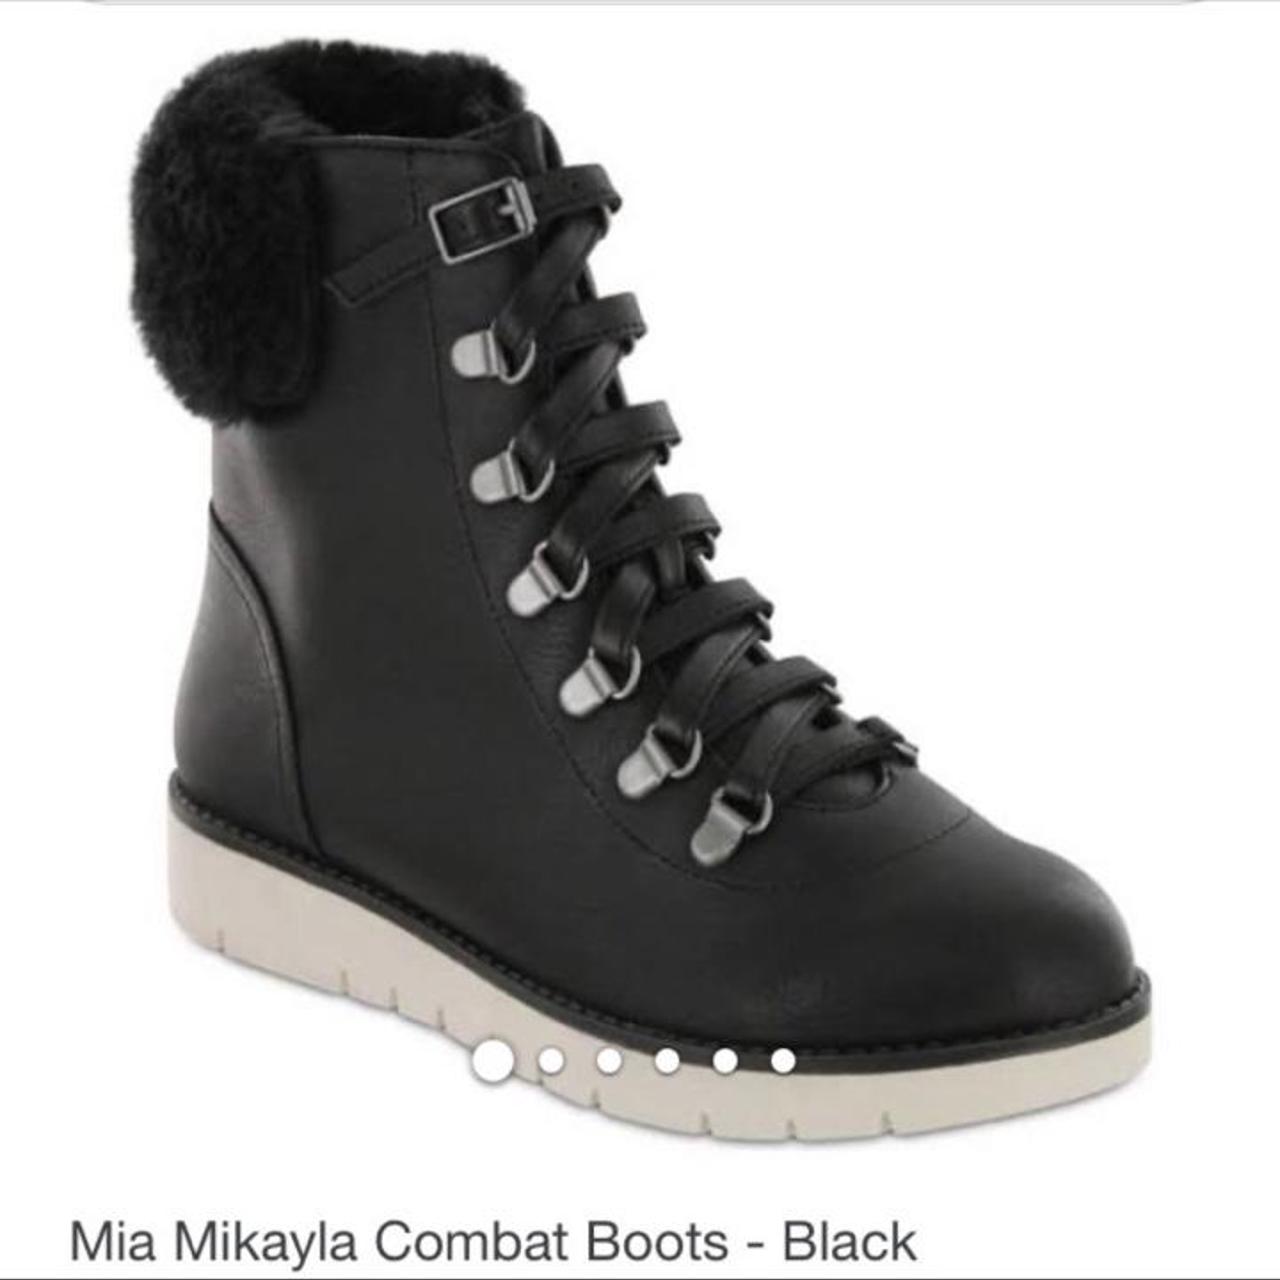 Product Image 4 - 6.5 Mia mikayla combat boots